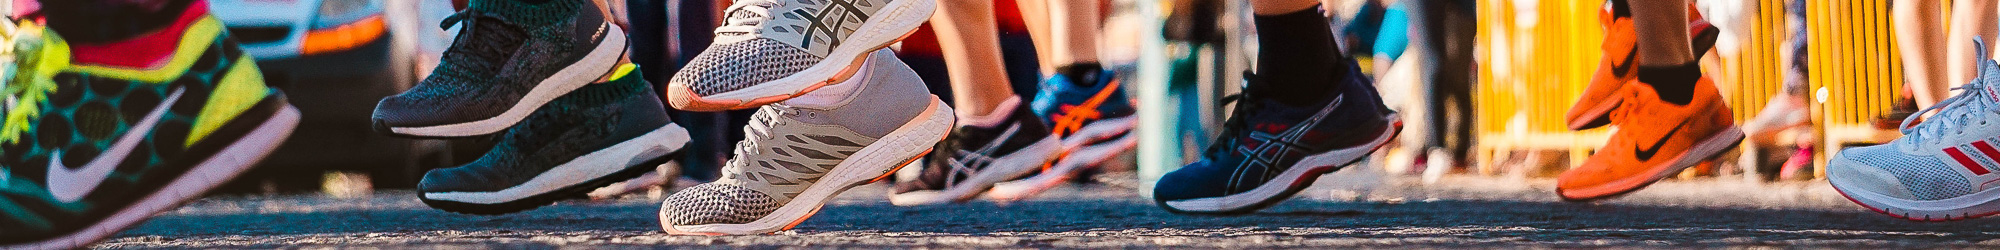 Füße mit Turnschuhen beim Laufevent